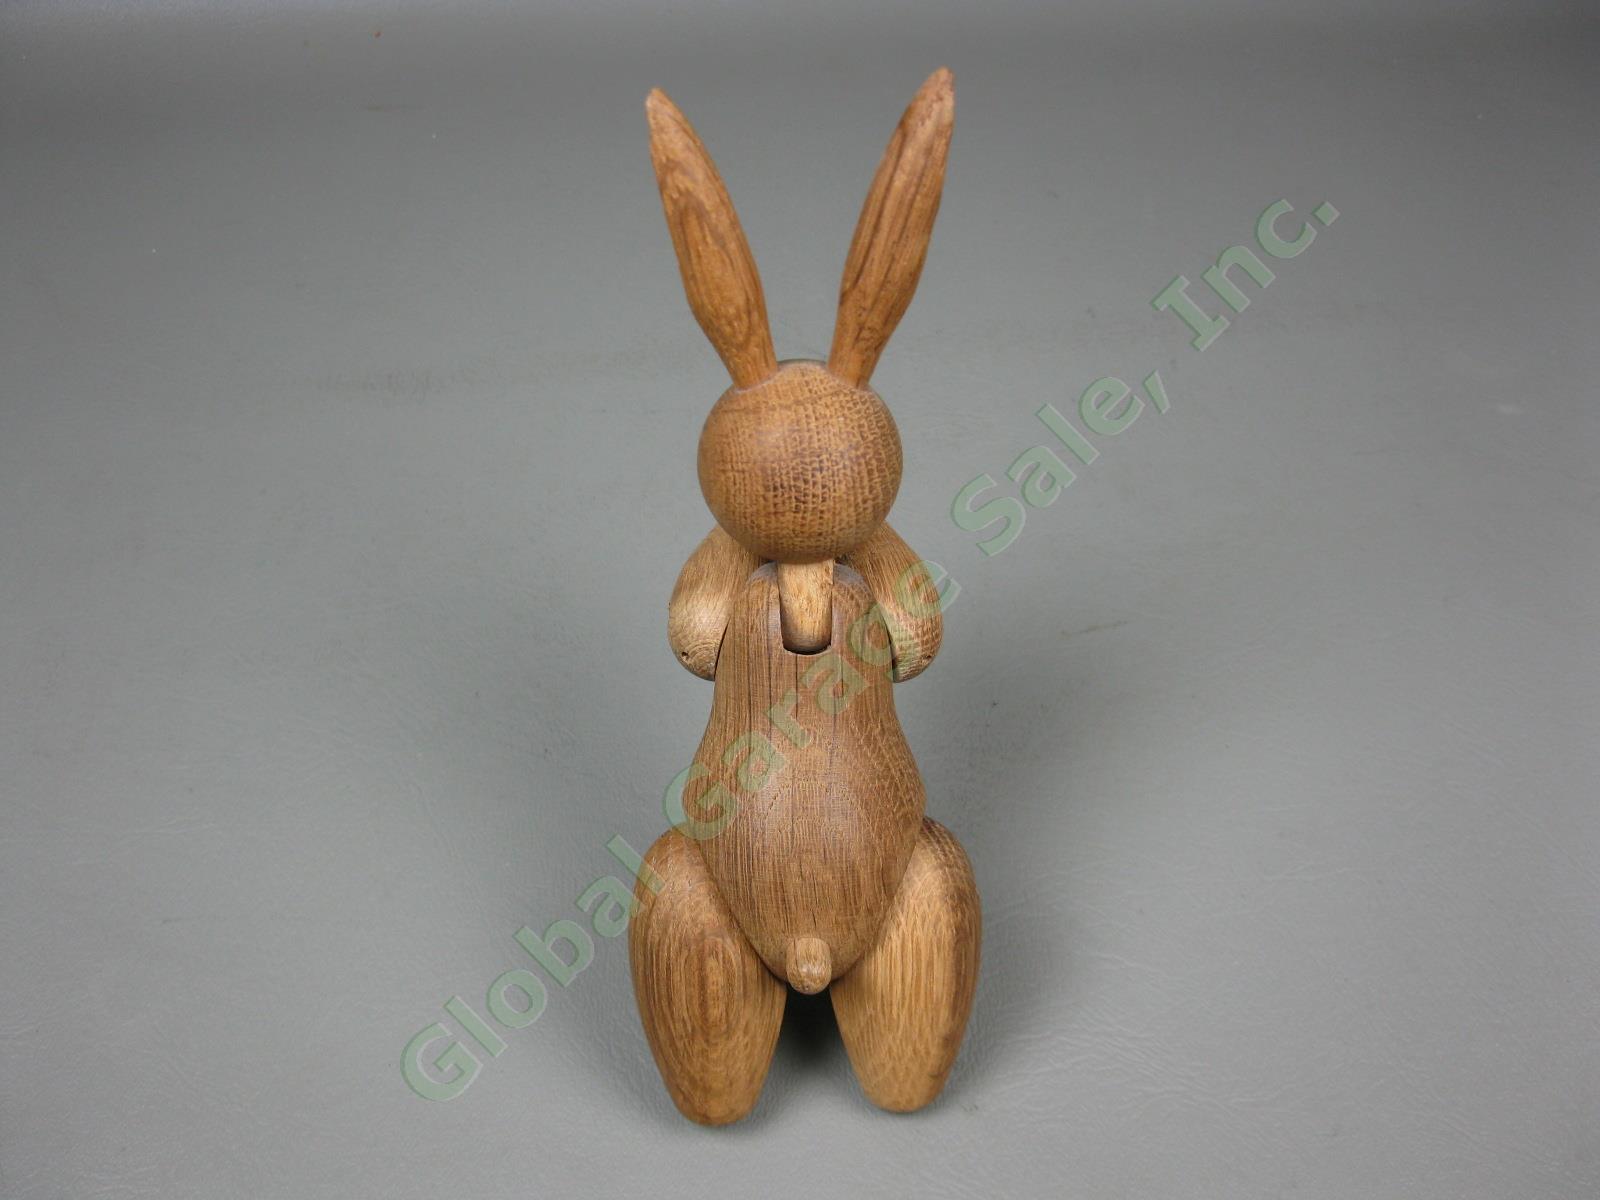 Vtg Mid-Century Modern Kay Bojesen Danish Teak Wood Wooden Rabbit Toy Denmark NR 2